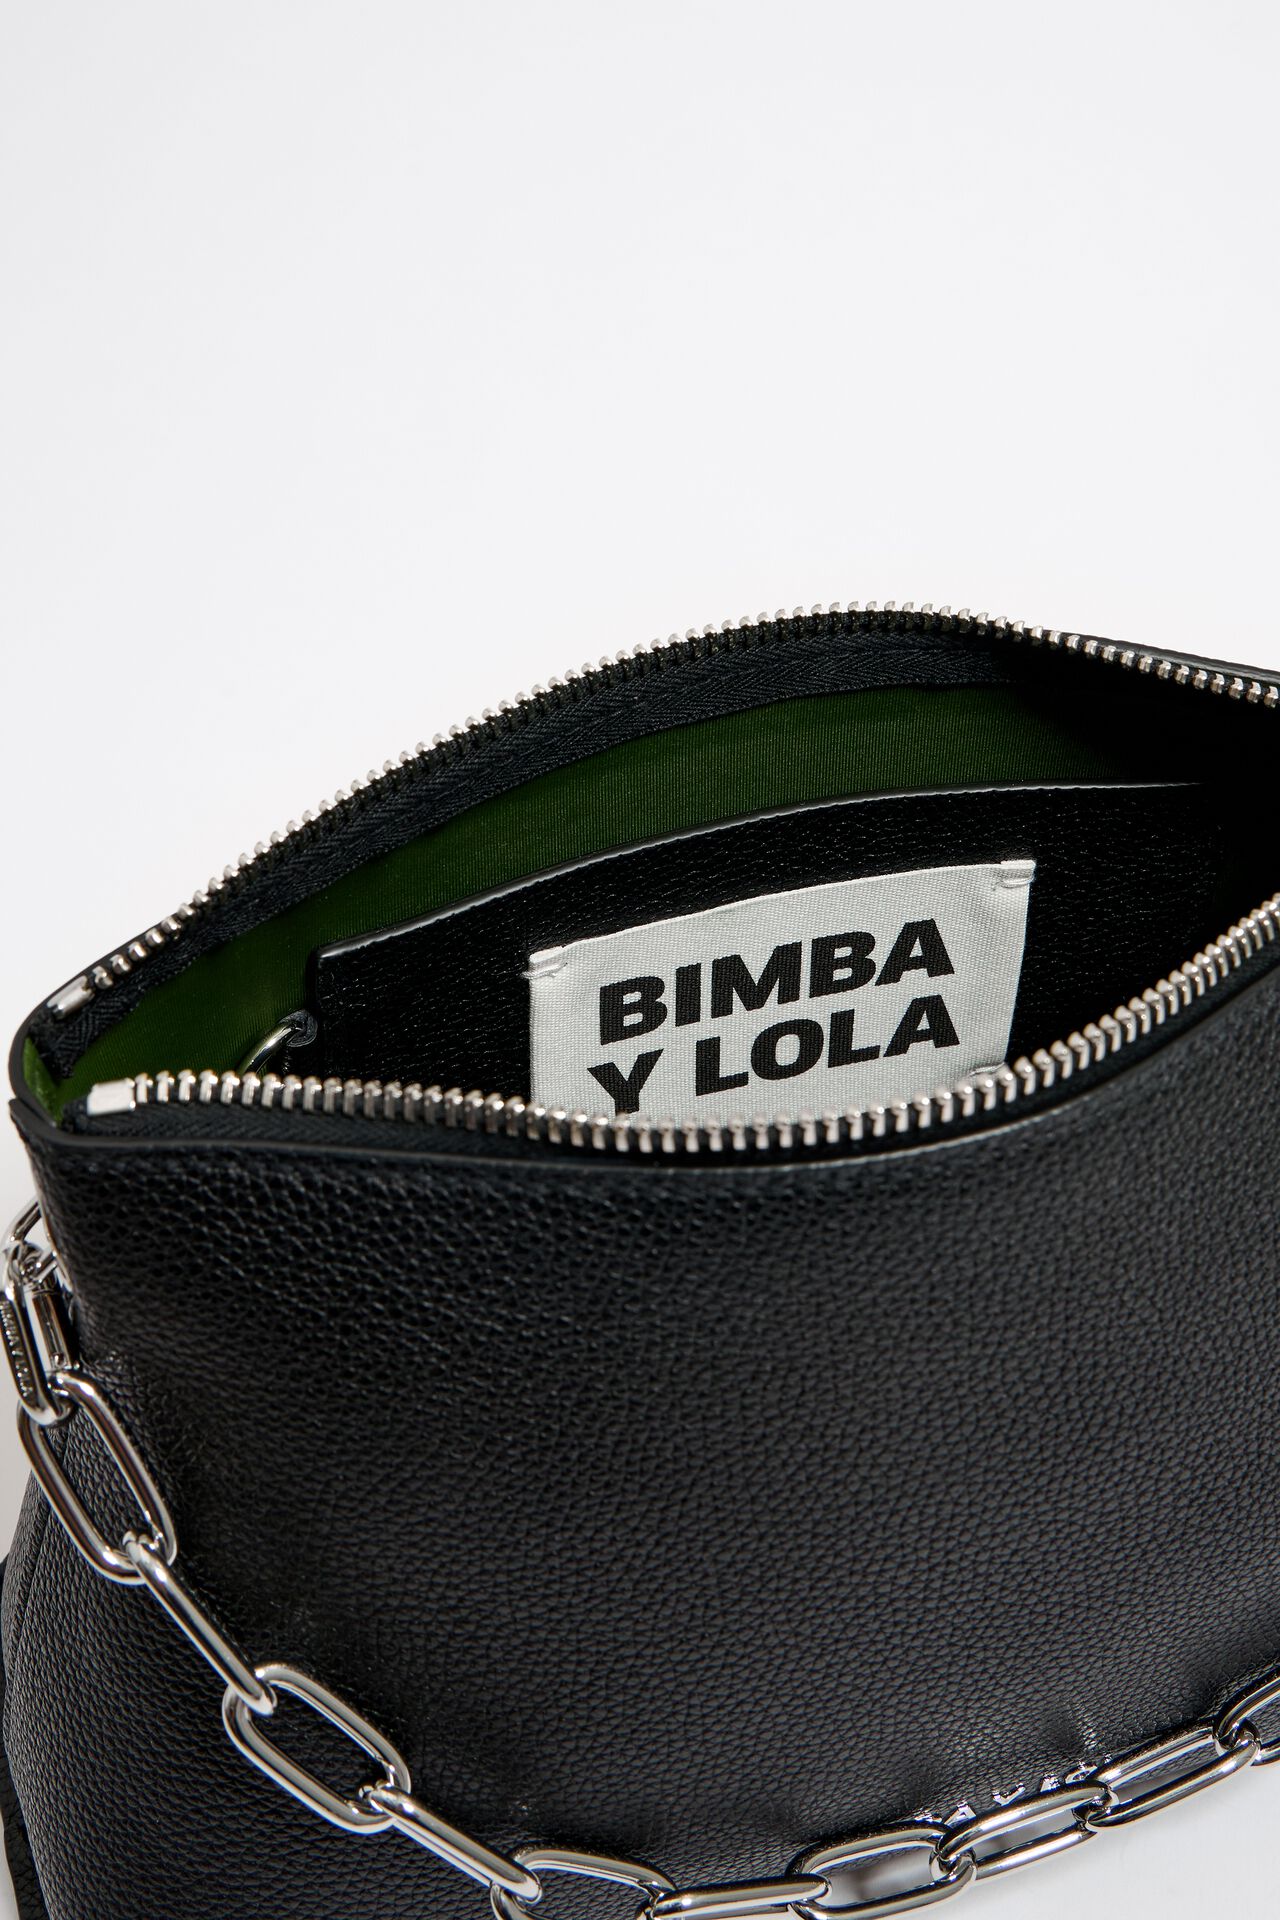 Bimba Y Lola Trapezium Leather Bag